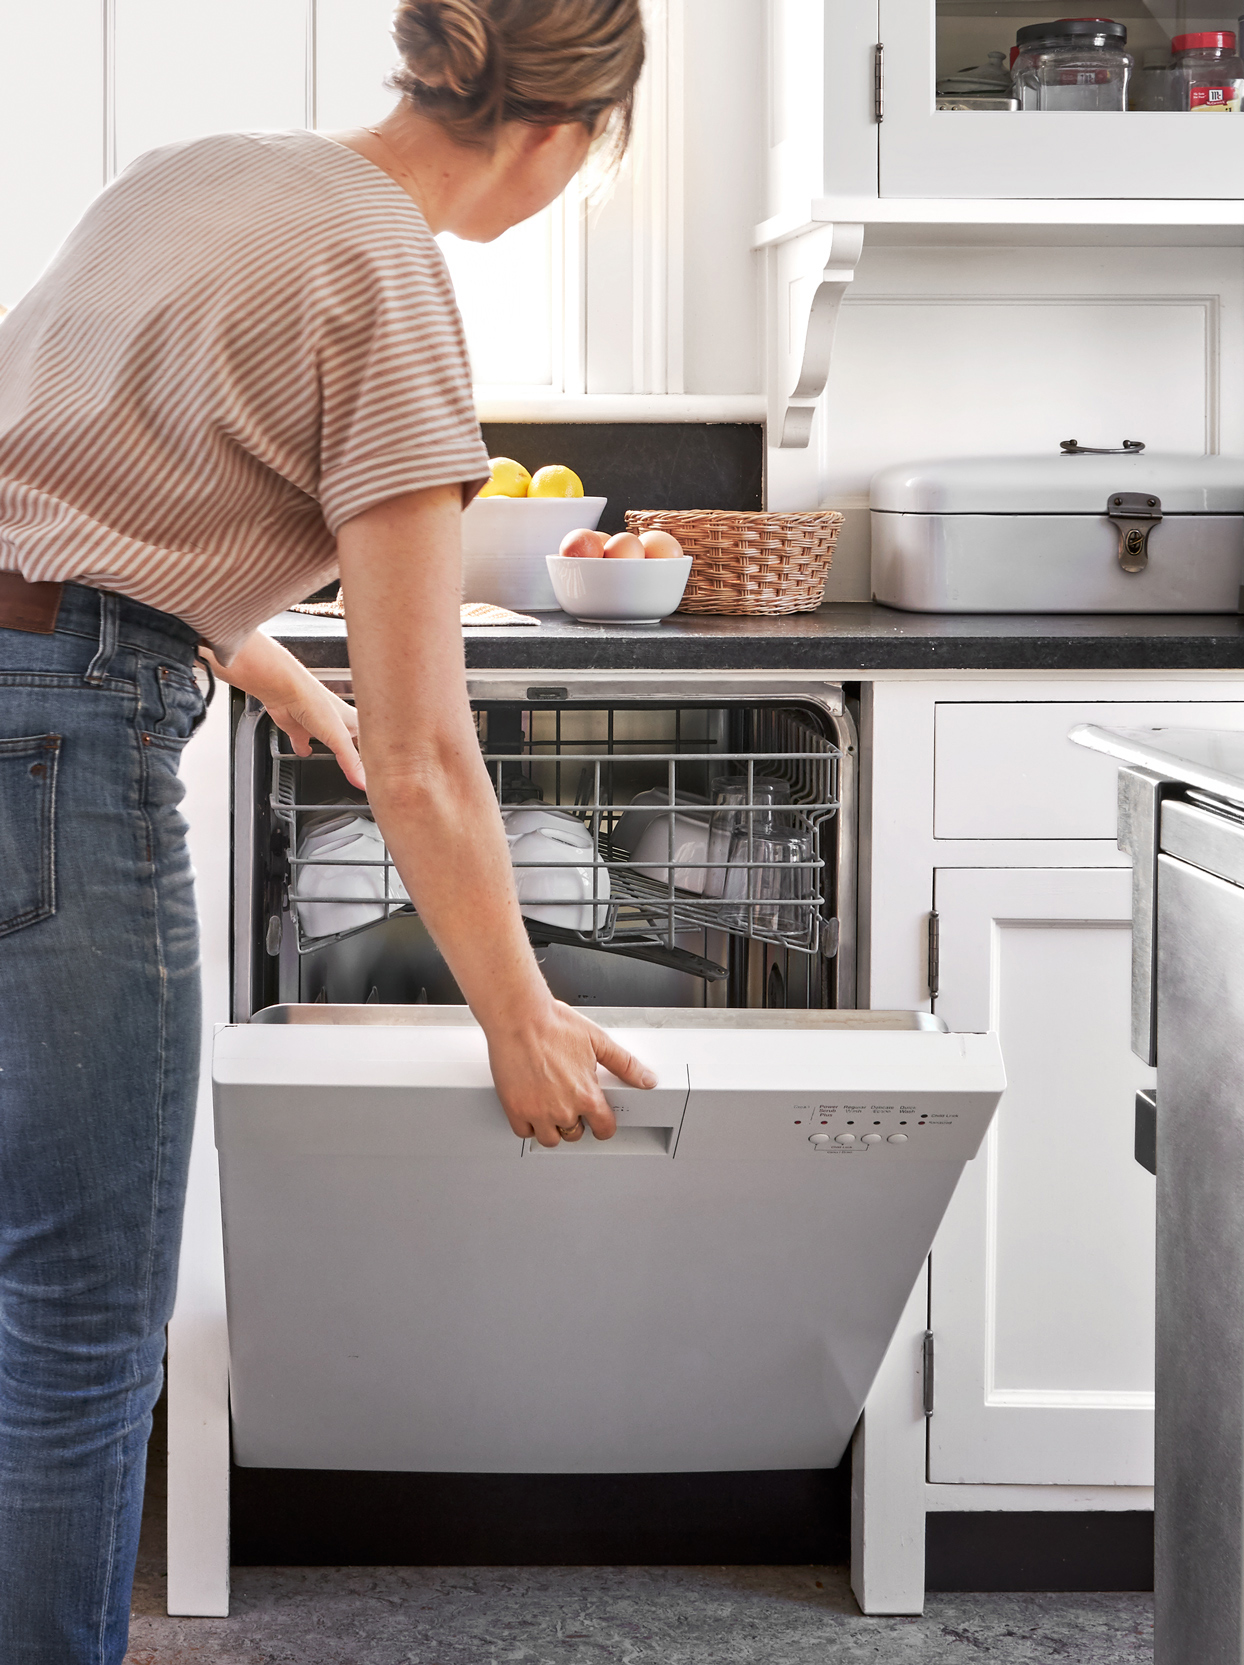 نحوه عملکرد انواع برنامه شستشوی ماشین ظرفشویی